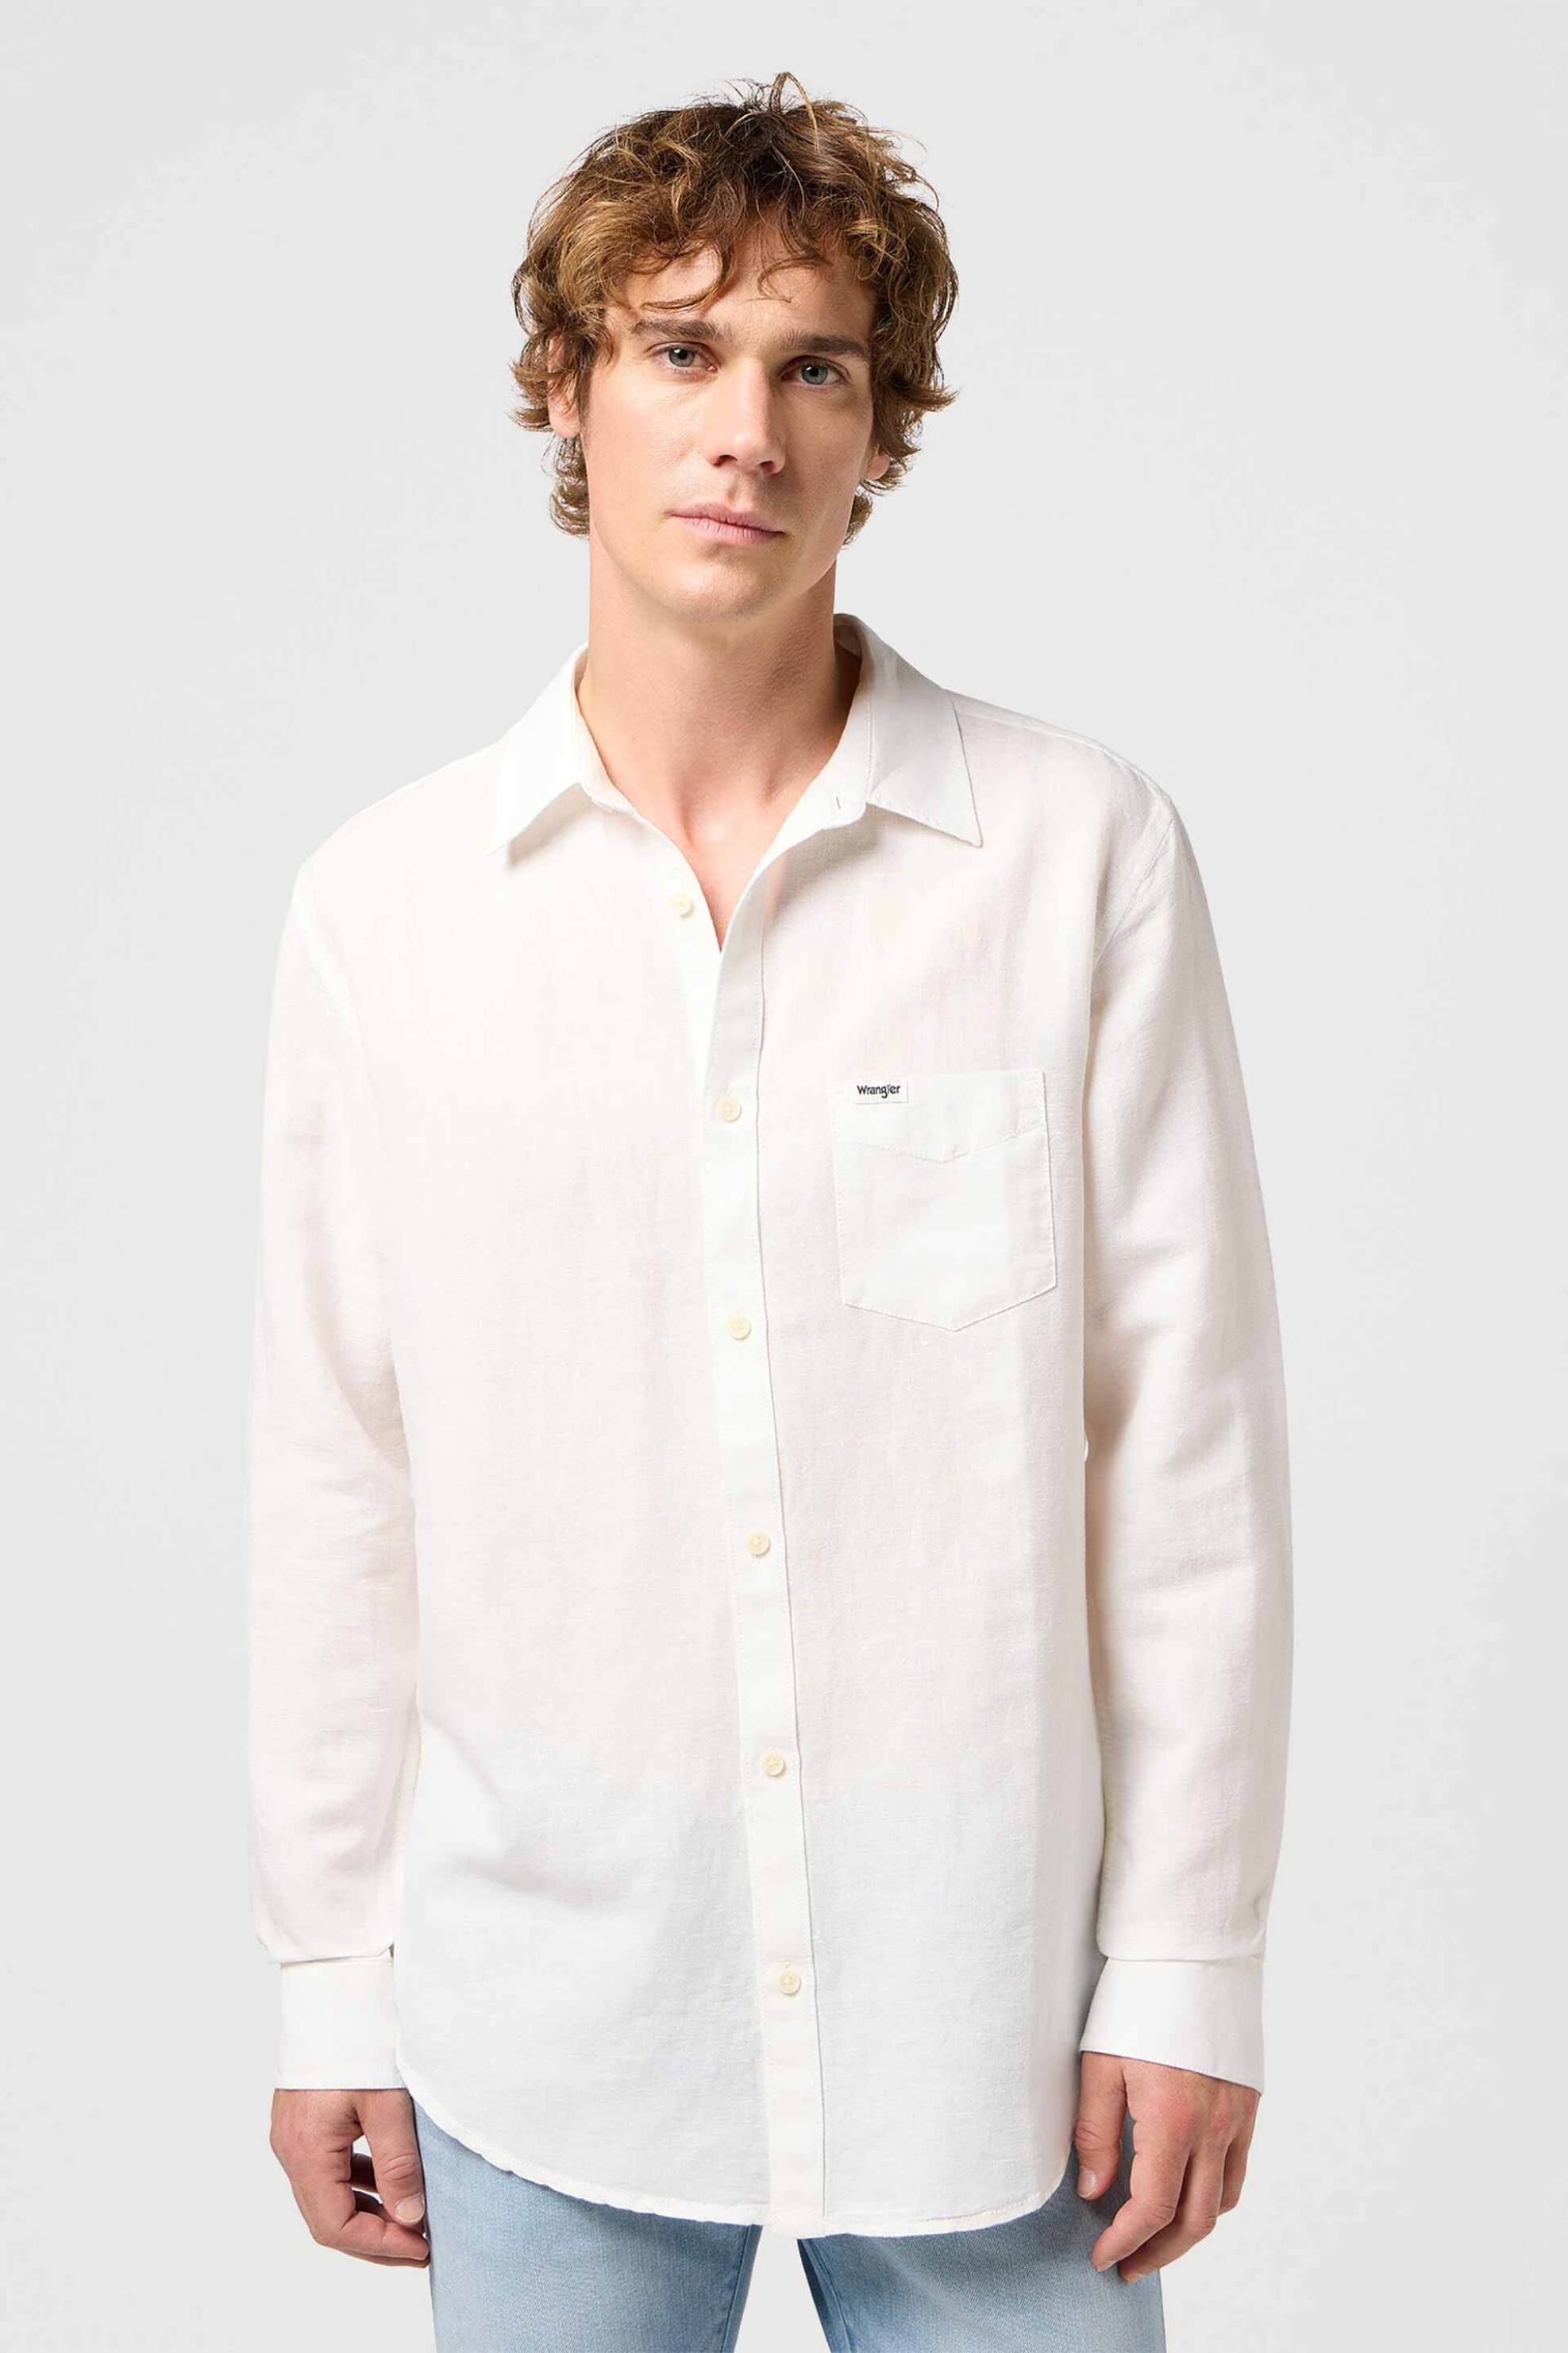 Ανδρική Μόδα > Ανδρικά Ρούχα > Ανδρικά Πουκάμισα > Ανδρικά Πουκάμισα Casual Wrangler® ανδρικό πουκάμισο με τσέπη και λογότυπο Regular Fit - 112352281 Λευκό